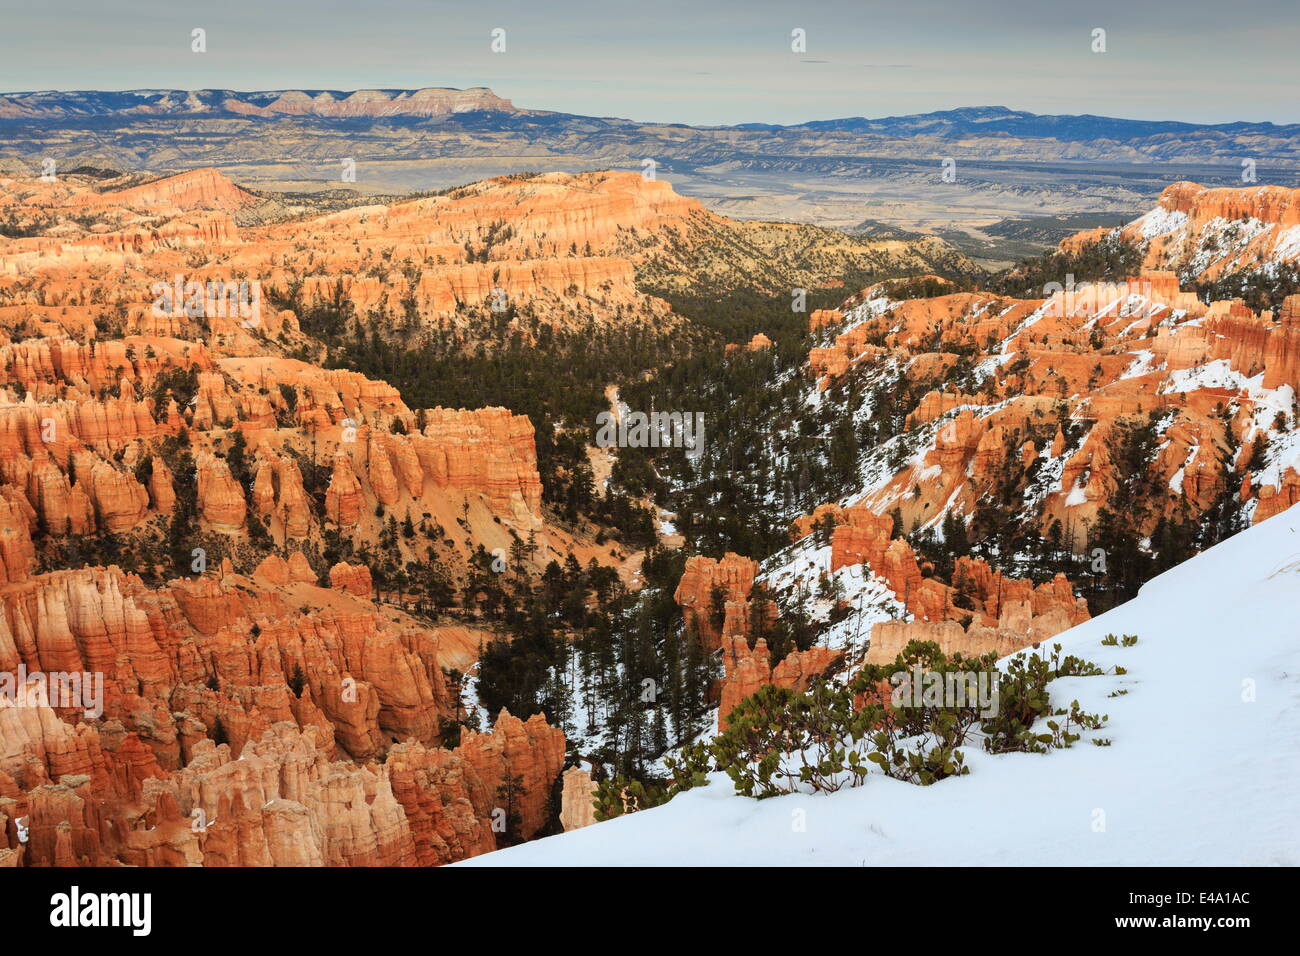 Hoodoos, acantilados, vegetación y vista lejana con nieve, Inspiration Point, Bryce Canyon National Park, Utah, EE.UU. Foto de stock